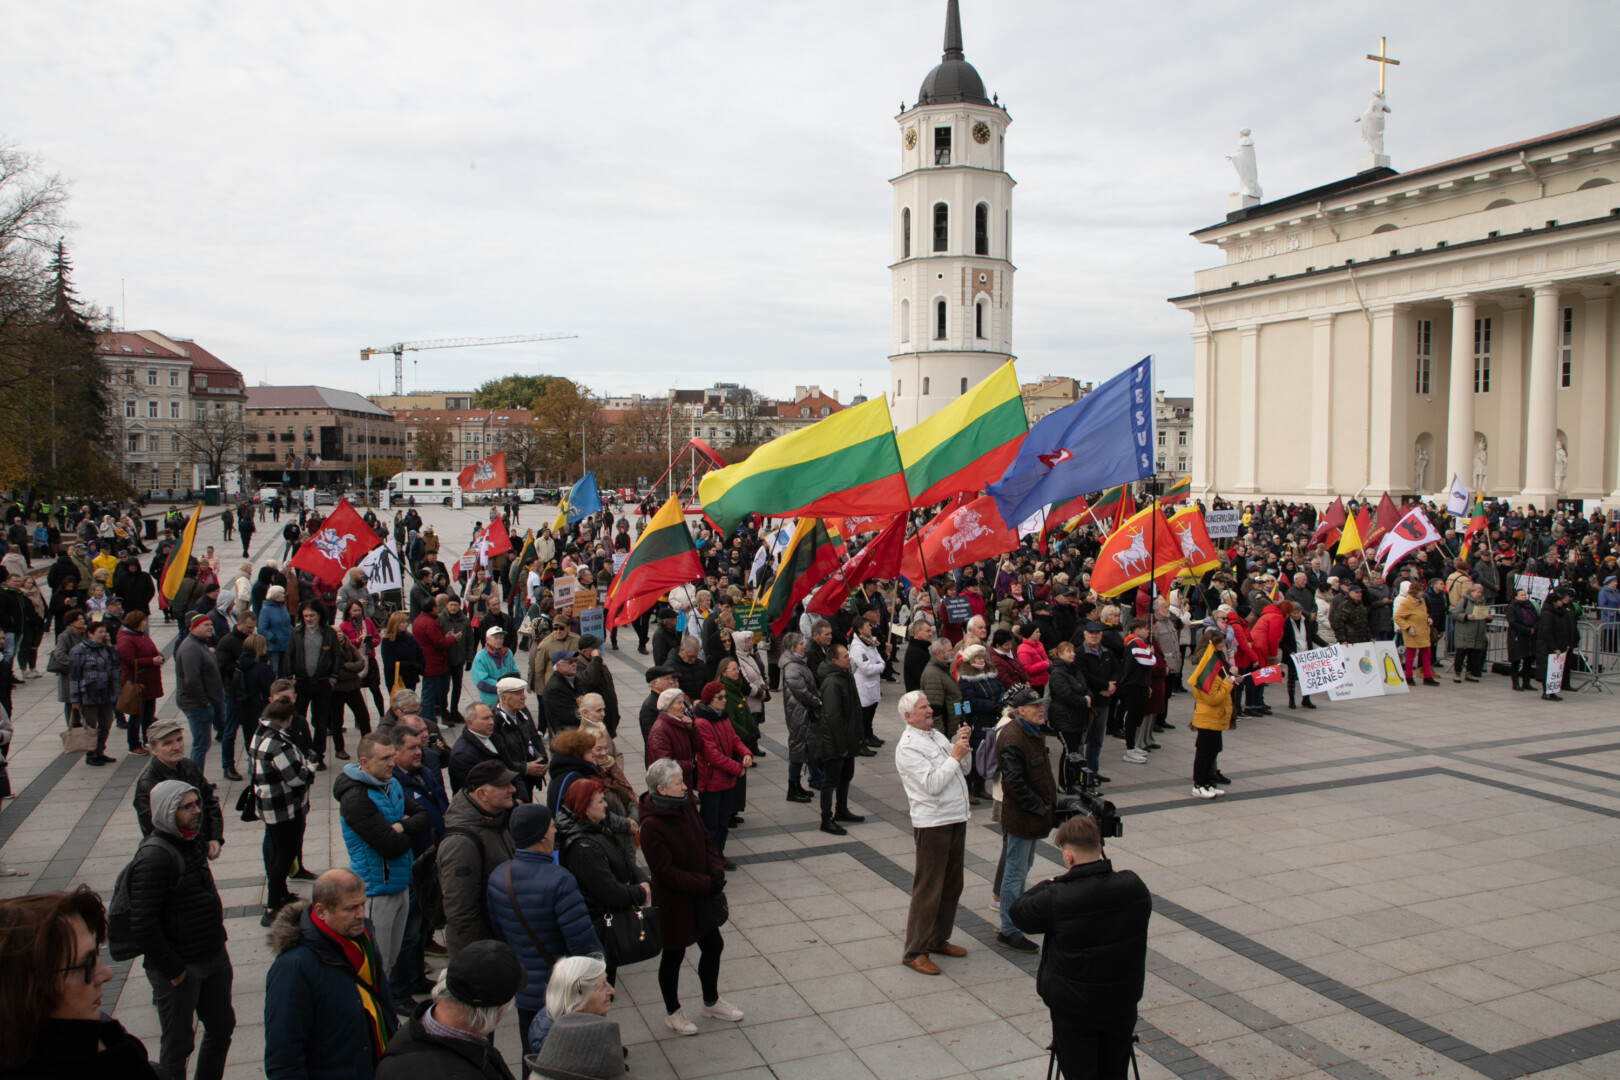 Vilniaus Katedros aikštėje prasideda Šeimų sąjūdžio organizuojamas mitingas „Apginkime Lietuvos Respublikos Konstituciją“ – sostinės centre renkasi pirmieji dalyviai.